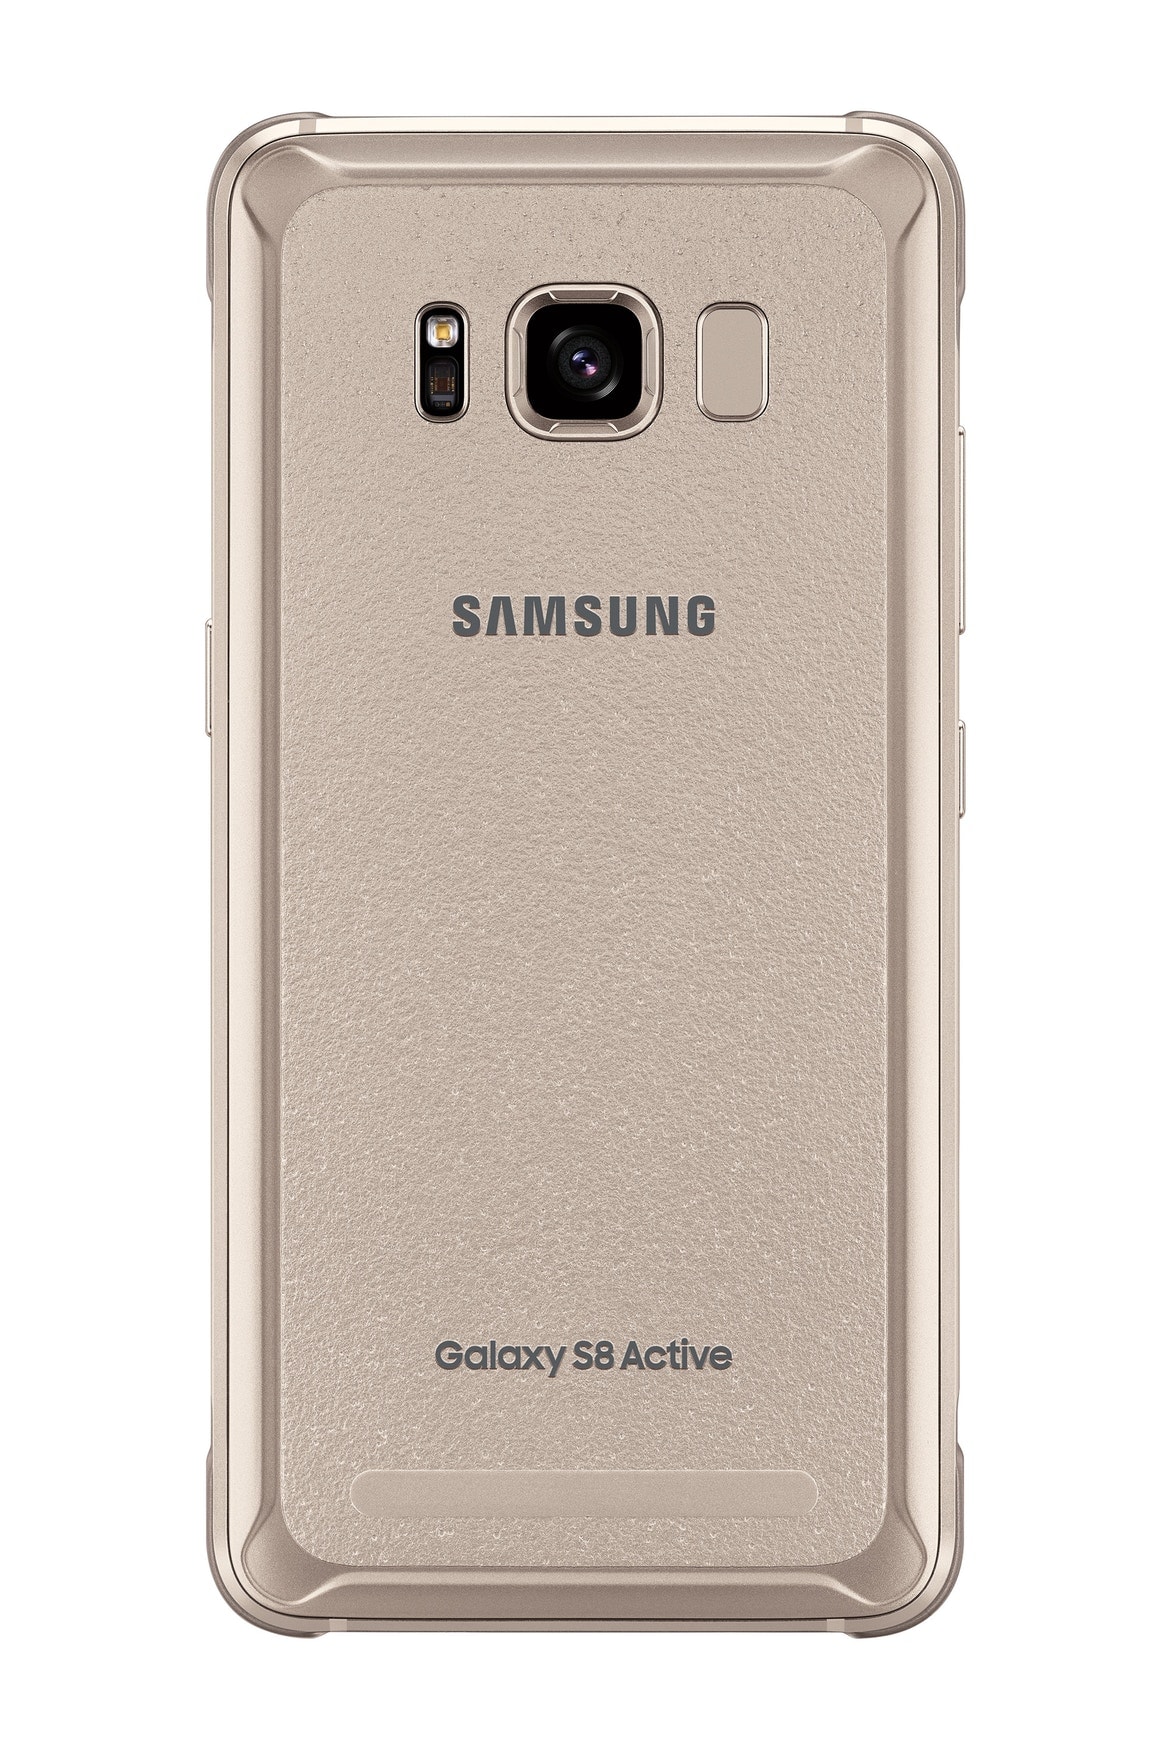 삼성, 아웃도어 전용 모델 갤럭시 S8 액티브 출시 samsung galaxy s8 active 2017